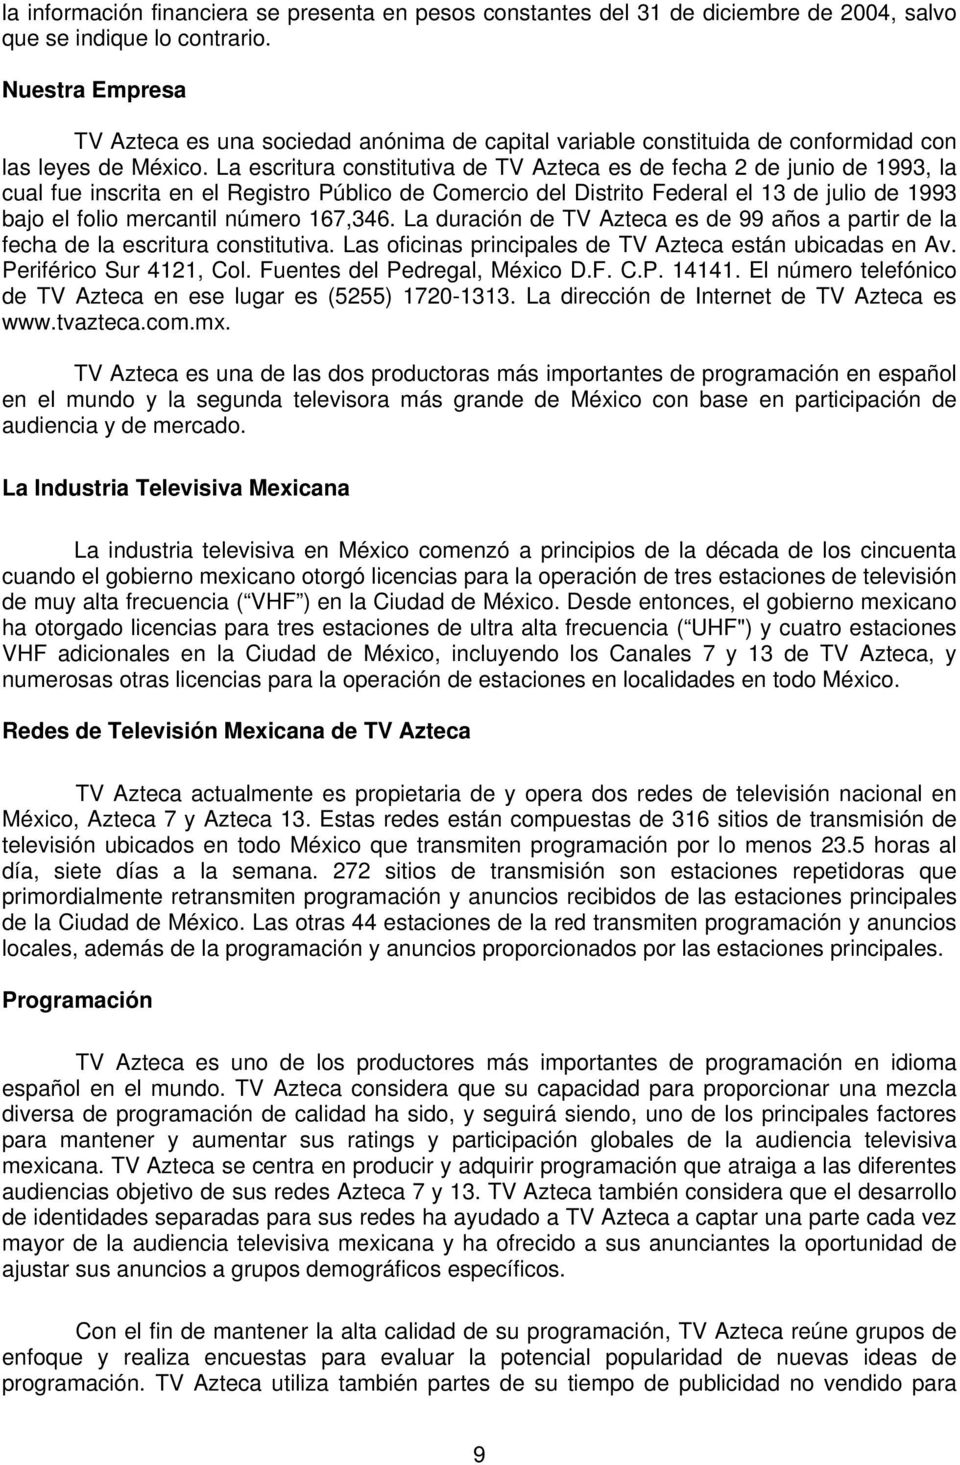 La escritura constitutiva de TV Azteca es de fecha 2 de junio de 1993, la cual fue inscrita en el Registro Público de Comercio del Distrito Federal el 13 de julio de 1993 bajo el folio mercantil